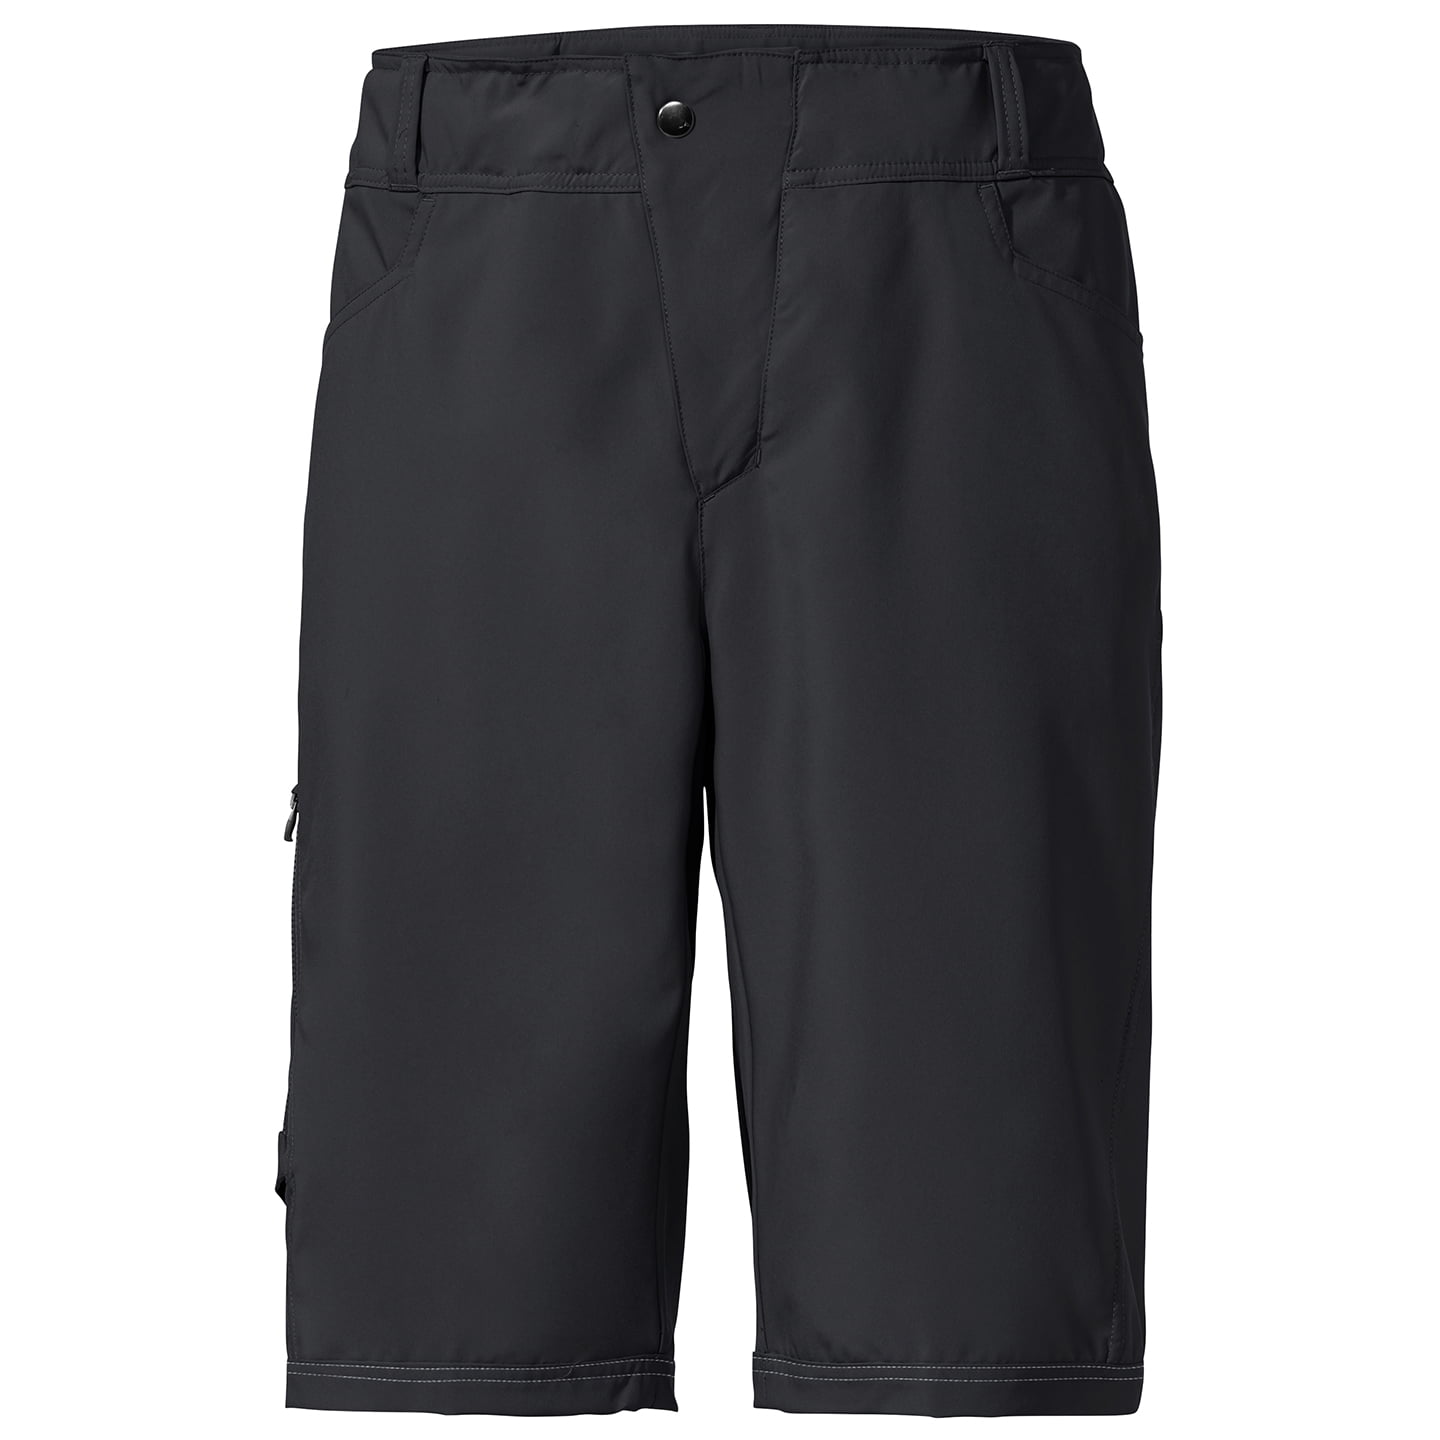 VAUDE Ledro Bike Shorts, for men, size L, MTB shorts, MTB clothing